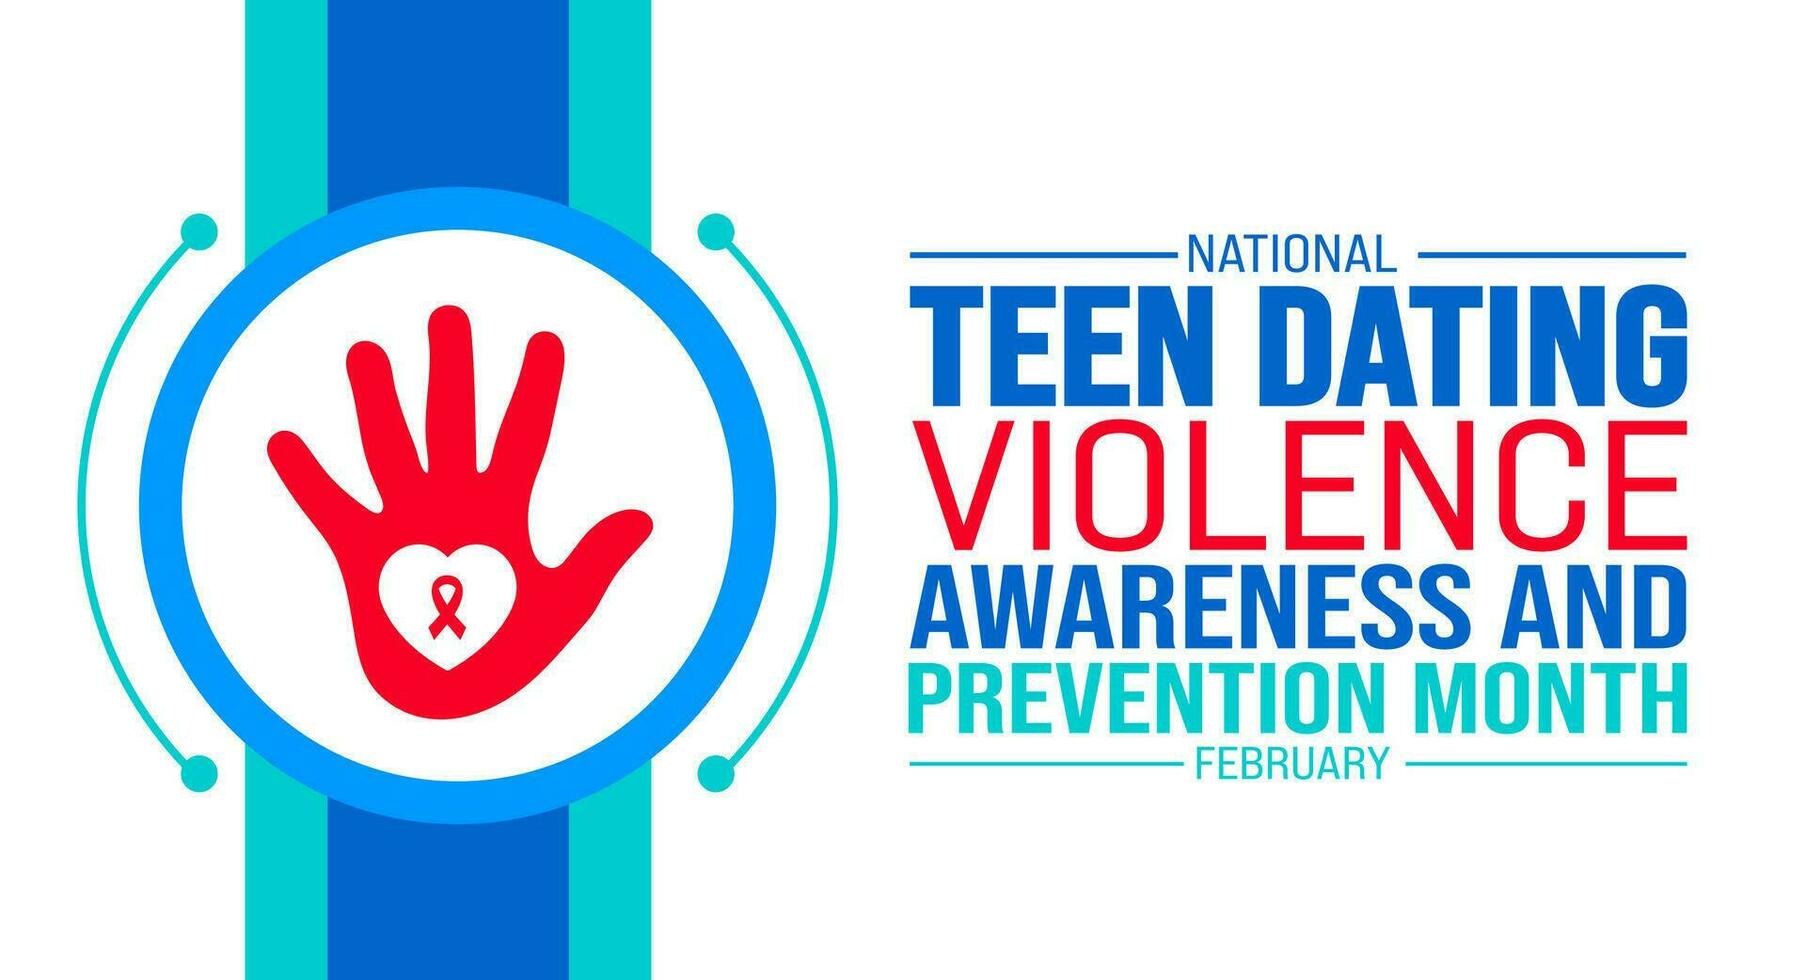 februari är nationell tonåring dejting våld medvetenhet och förebyggande månad bakgrund mall. Semester begrepp. bakgrund, baner, plakat, kort, och affisch design mall med text inskrift vektor